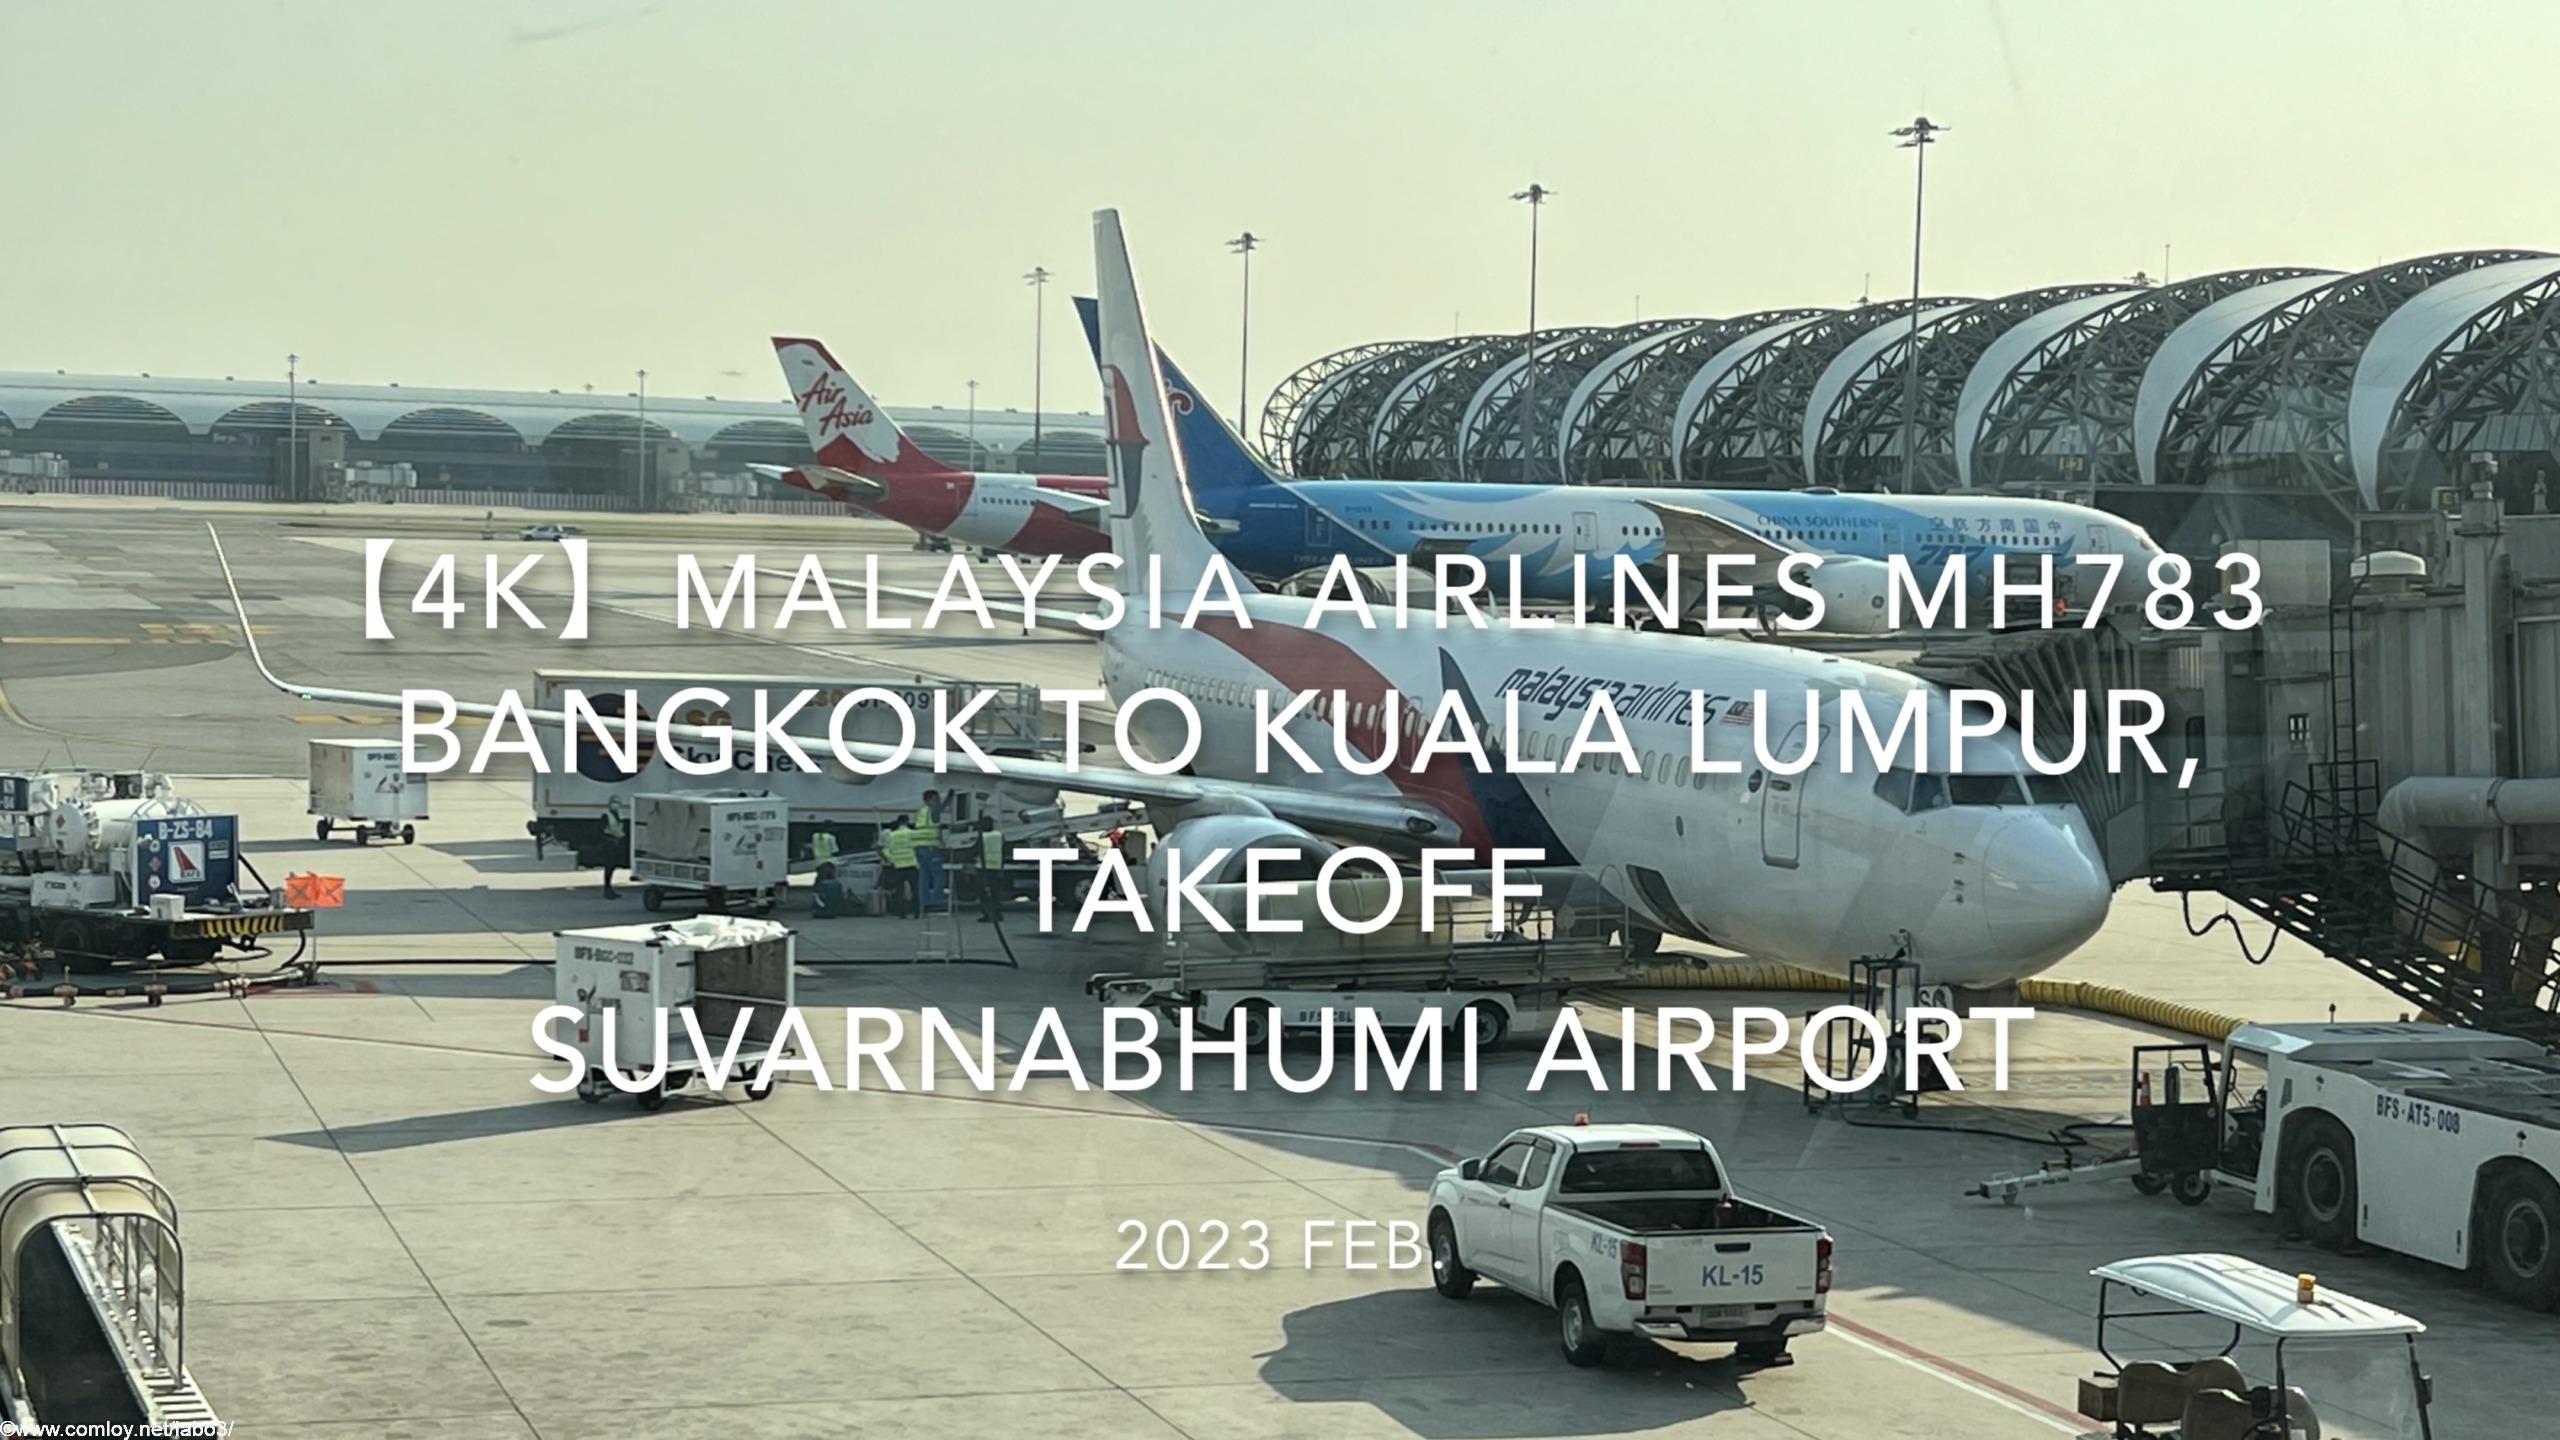 【機内から離着陸映像 4K】2023 Feb. Malaysia Airlines MH783 BANGKOK to Kuala Lumpur,Takeoff Suvarnabhumi Airport マレーシア航空 バンコク - クアラルンプール スワンナプーム空港離陸